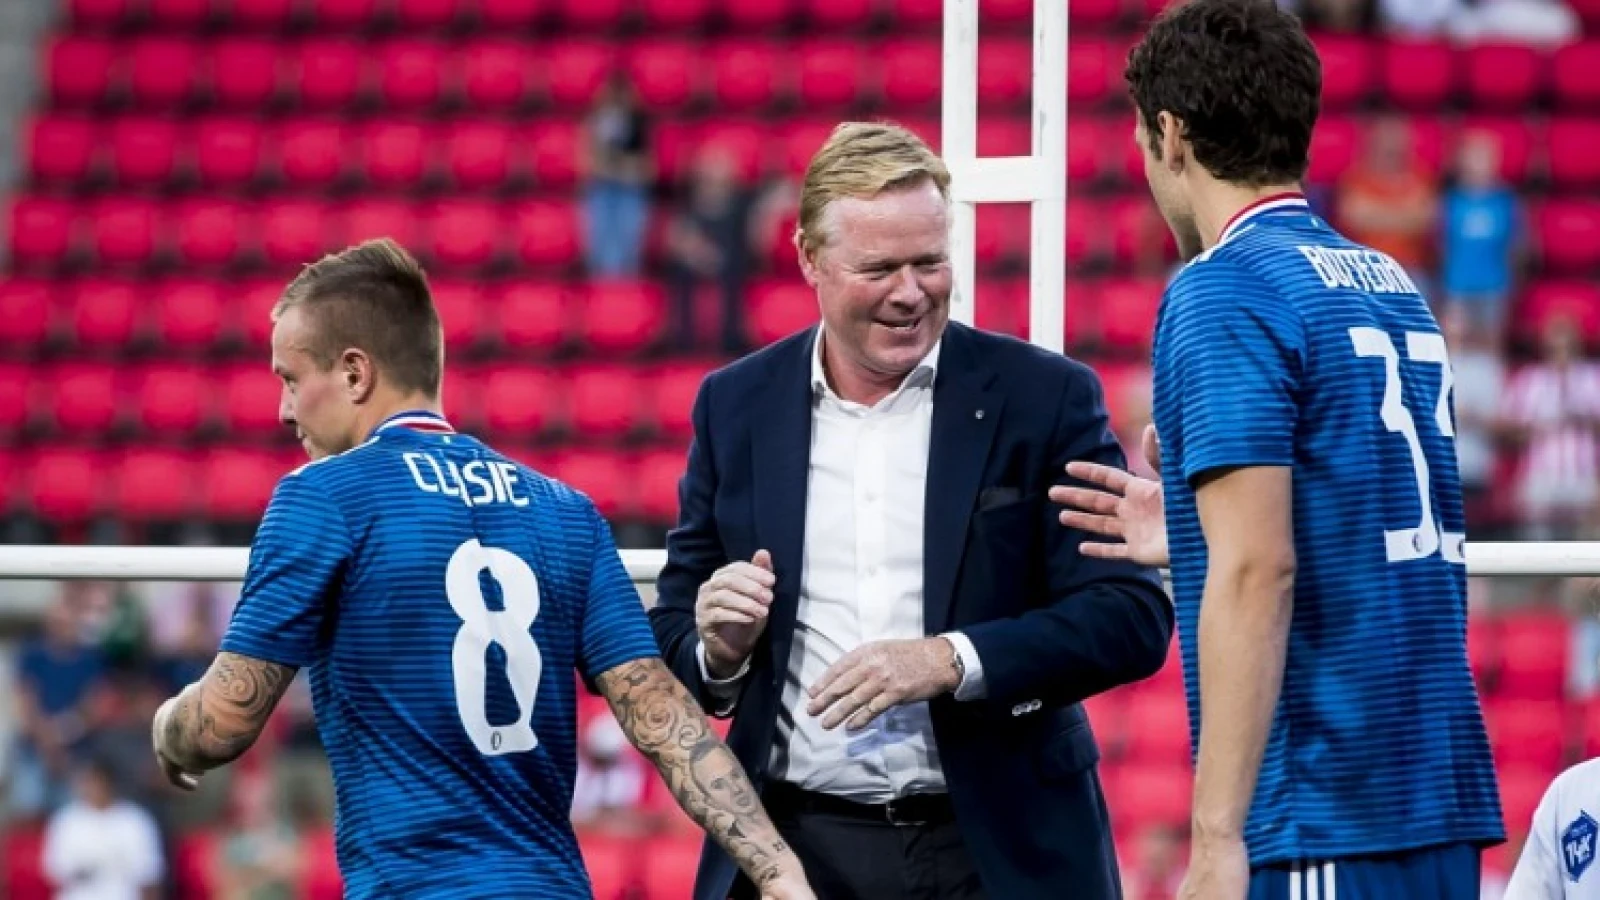 Koeman keihard tegen Feyenoorder: 'Realiseer je dat we je gewoon kunnen terugsturen'